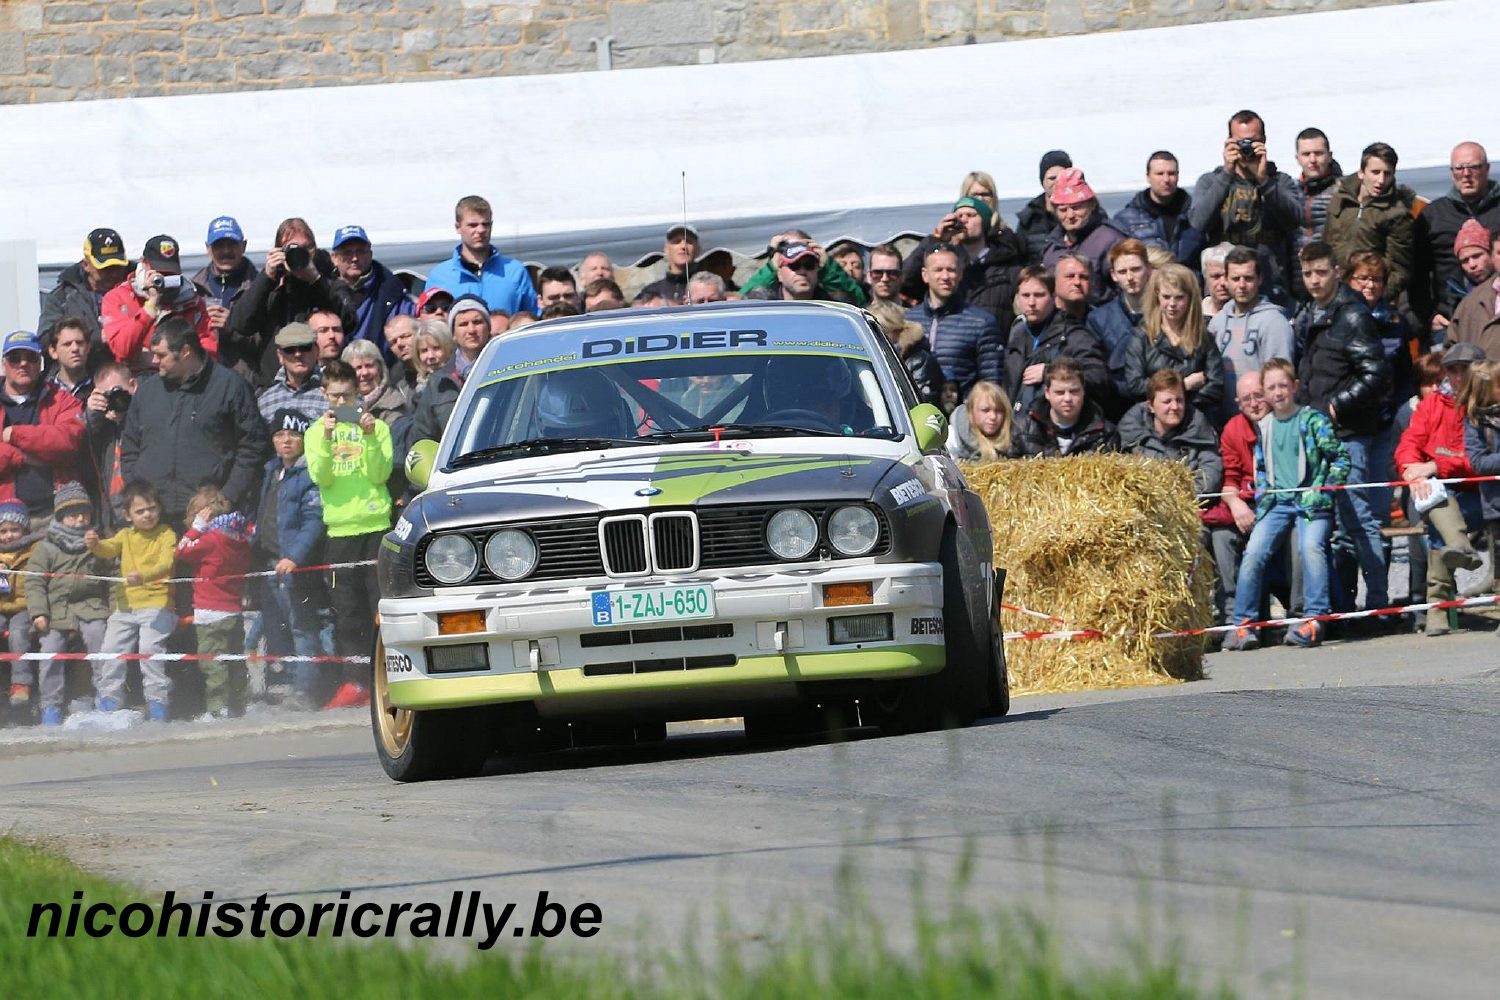 Didier Vanwijnsberghe terug aan de start met de BMW M3